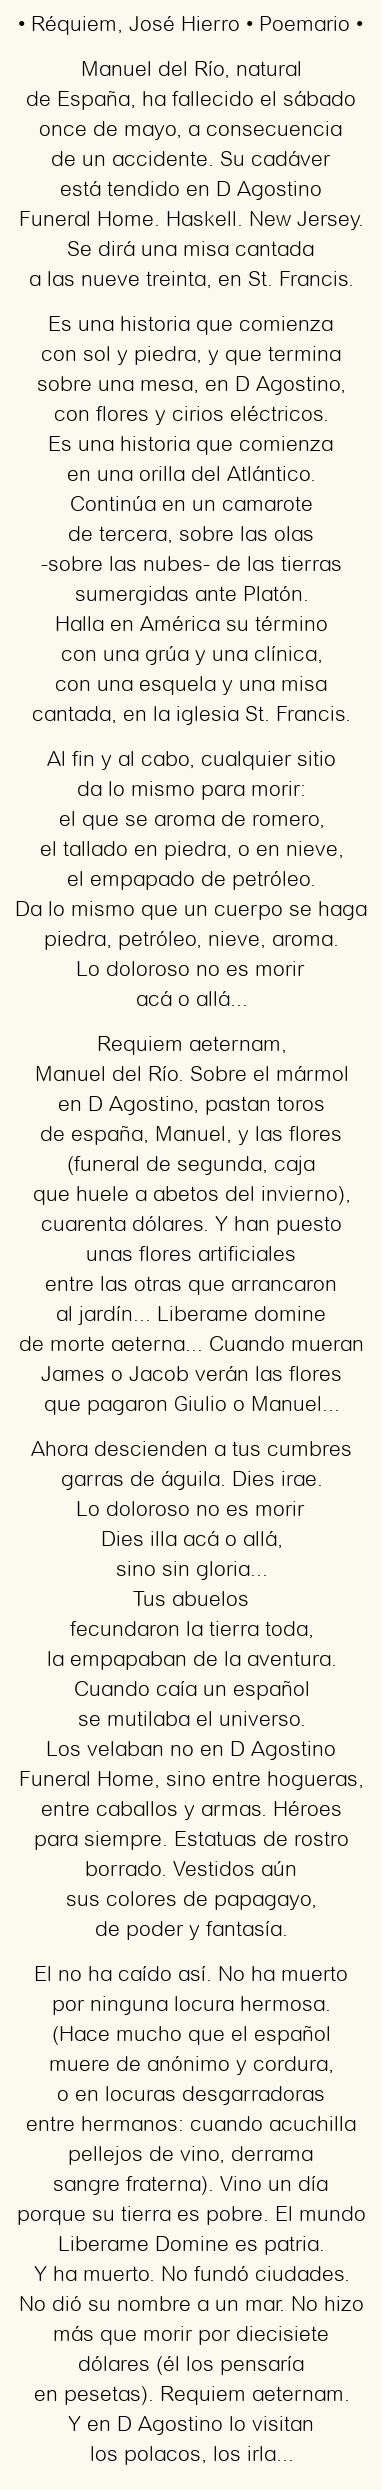 Imagen con el poema Réquiem, por José Hierro